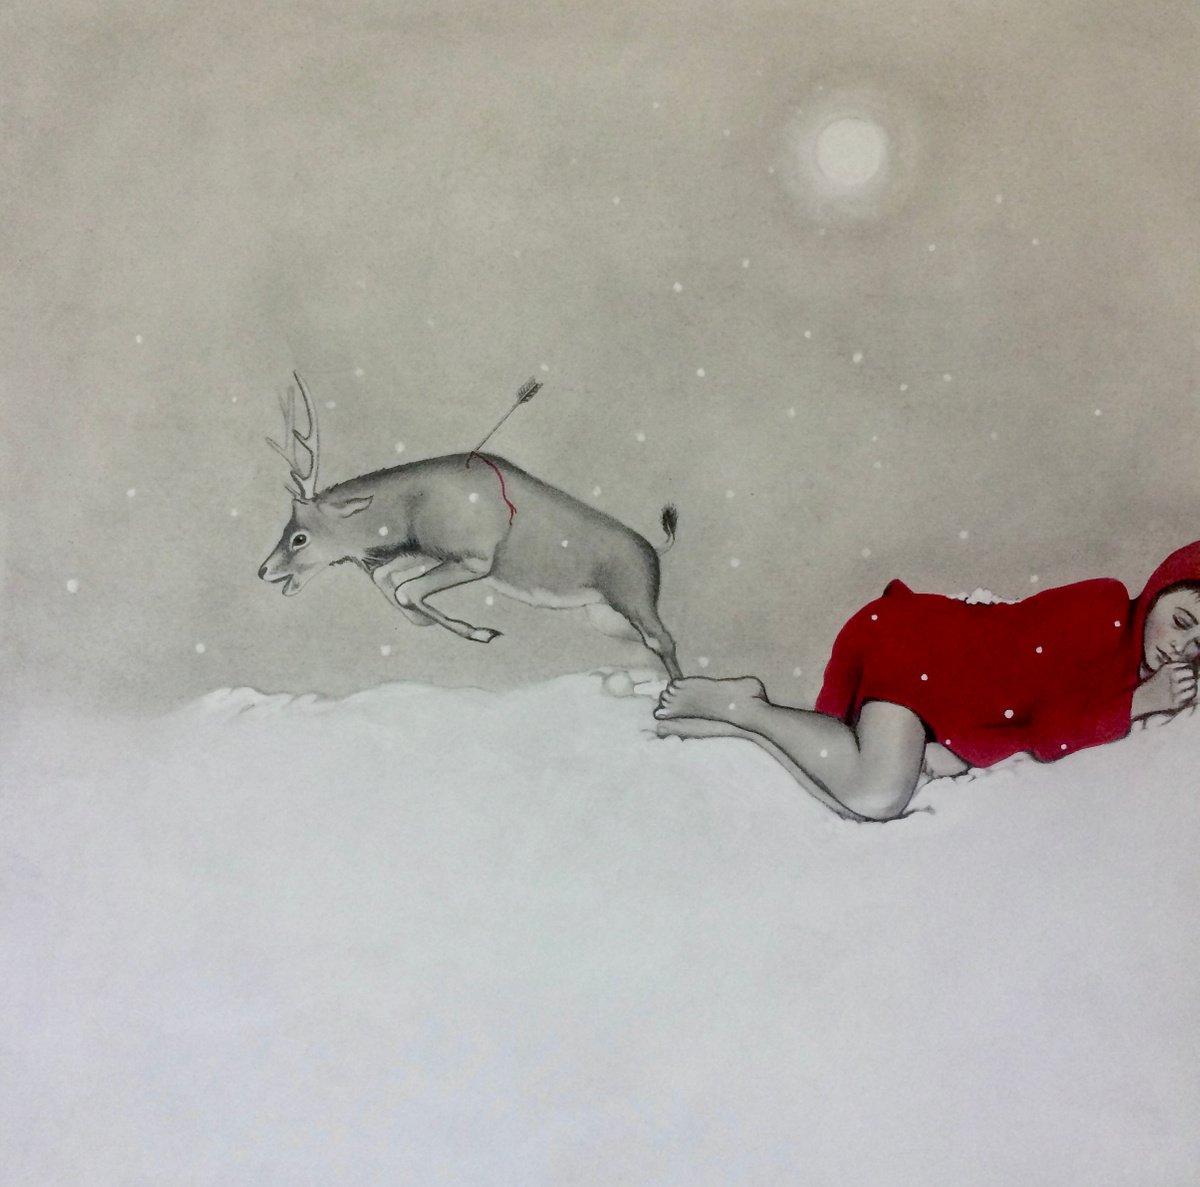 Winter’s tale by Cristina Canamero